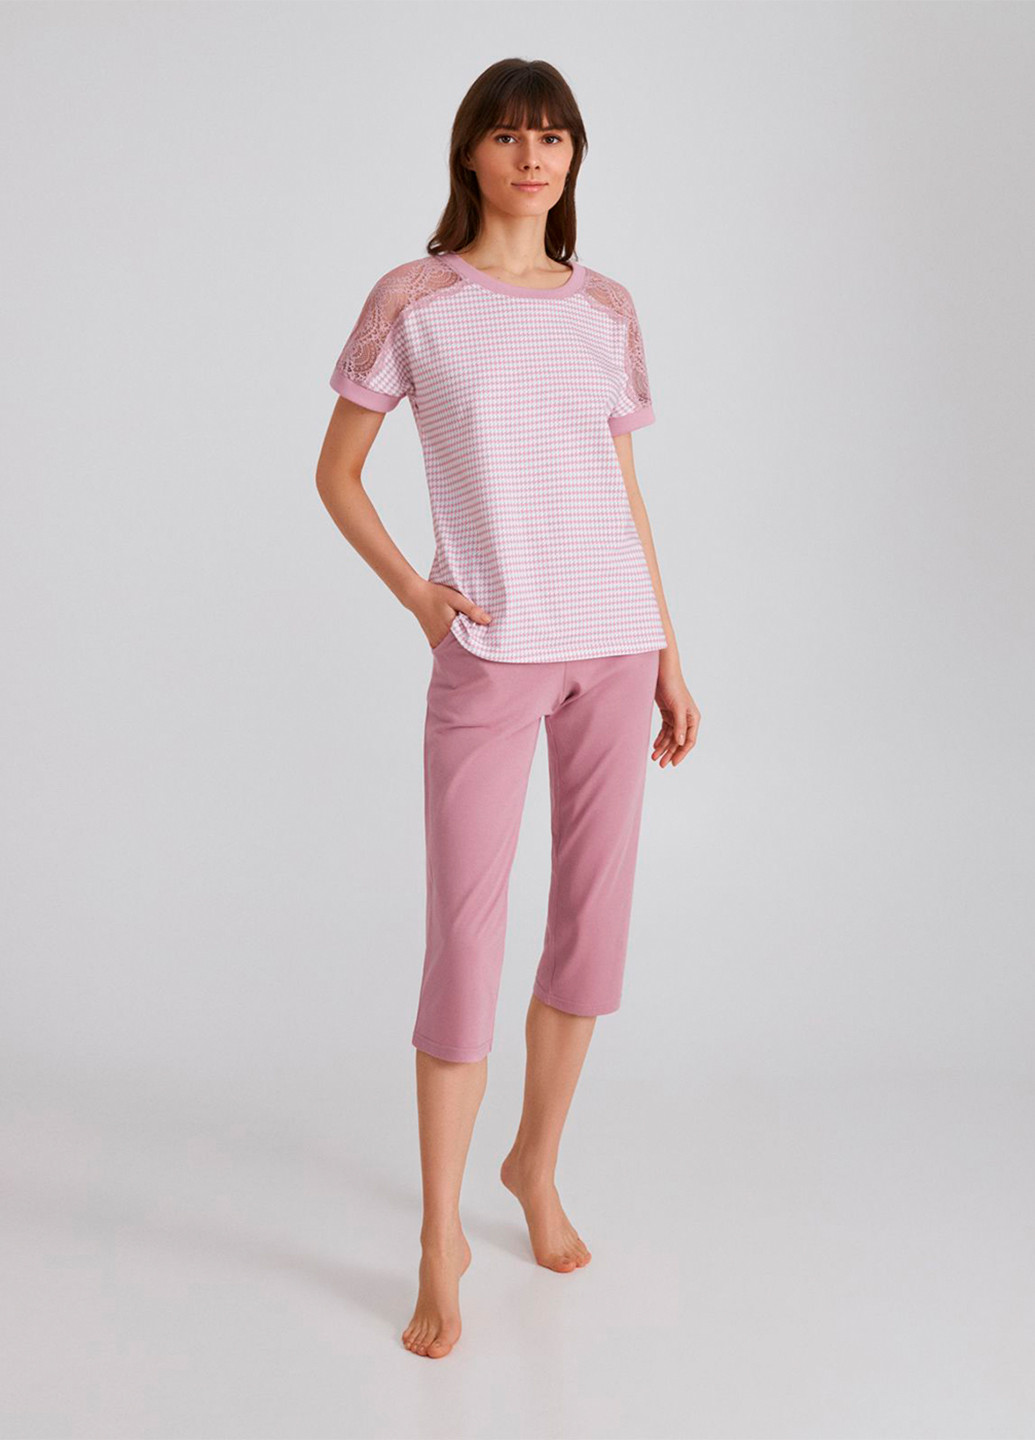 Розовая всесезон пижама (футболка, бриджи) футболка + бриджи Ellen